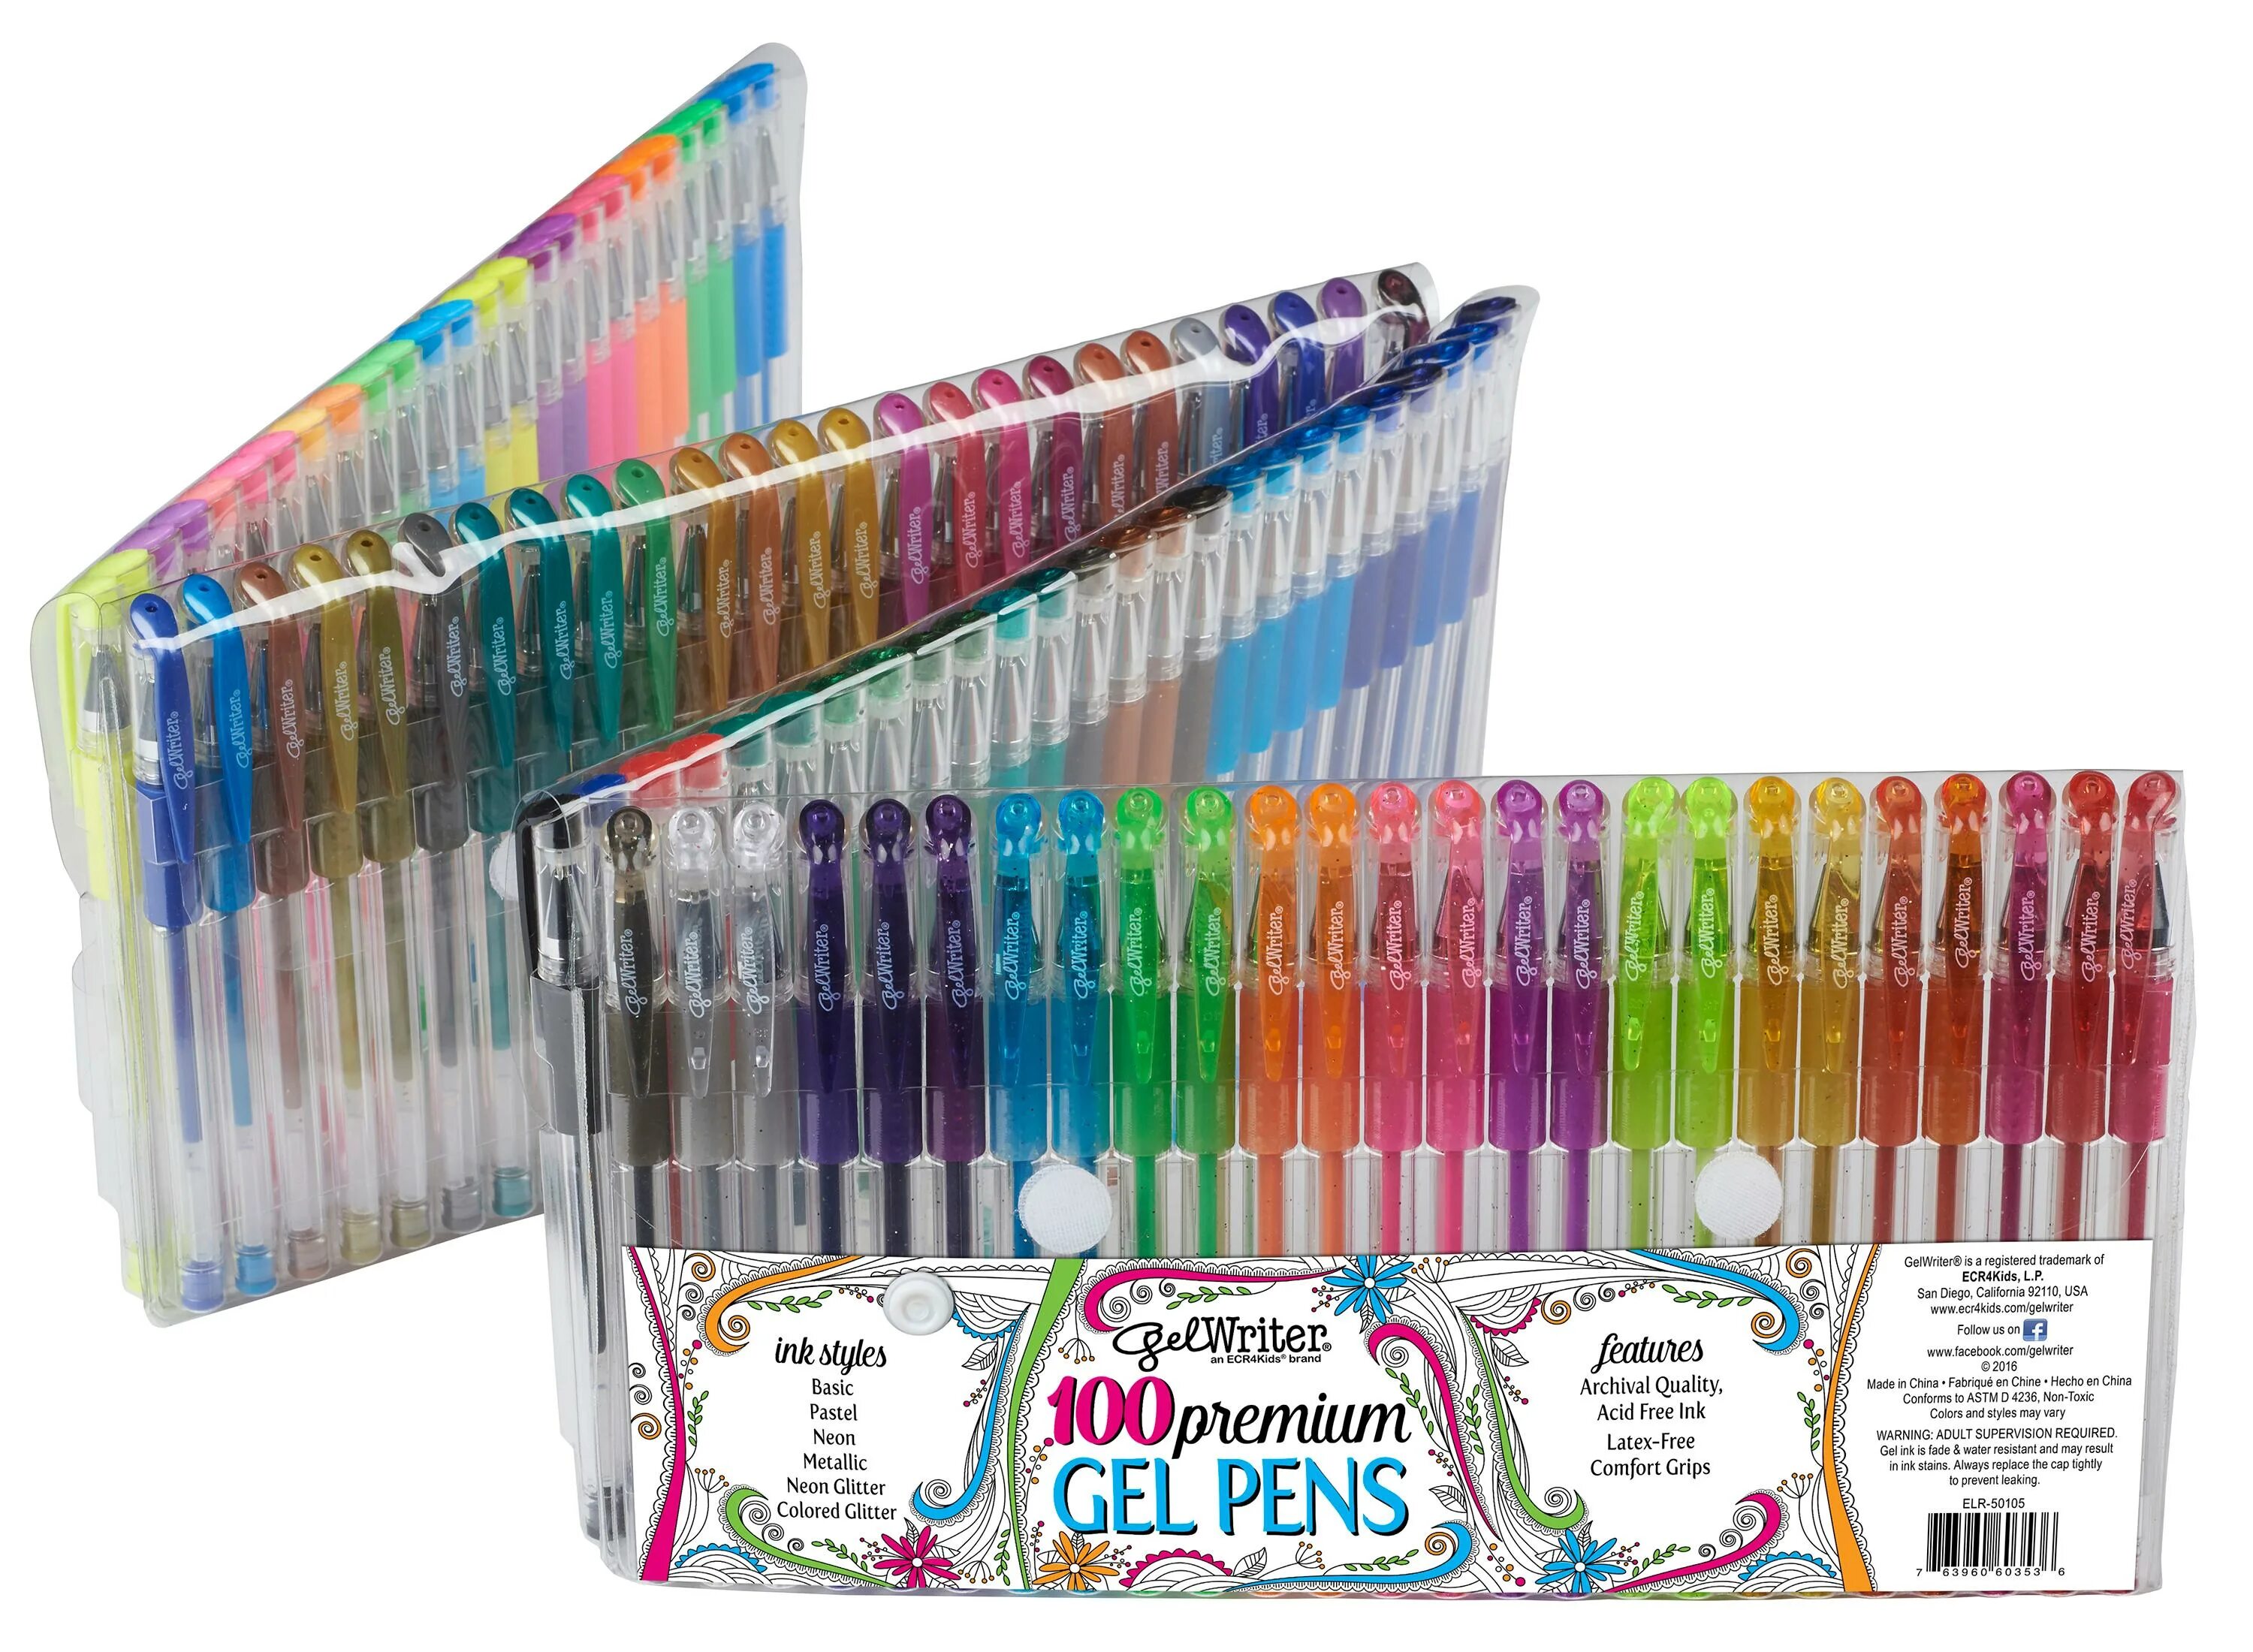 Набор гелевых ручек. LOLLIZ 70 шт/100 шт цветные гелевые ручки. Ручки Gel Pens. Набор гелевых ручек 100 штук. Набор гелевых ручек 100 цветов.